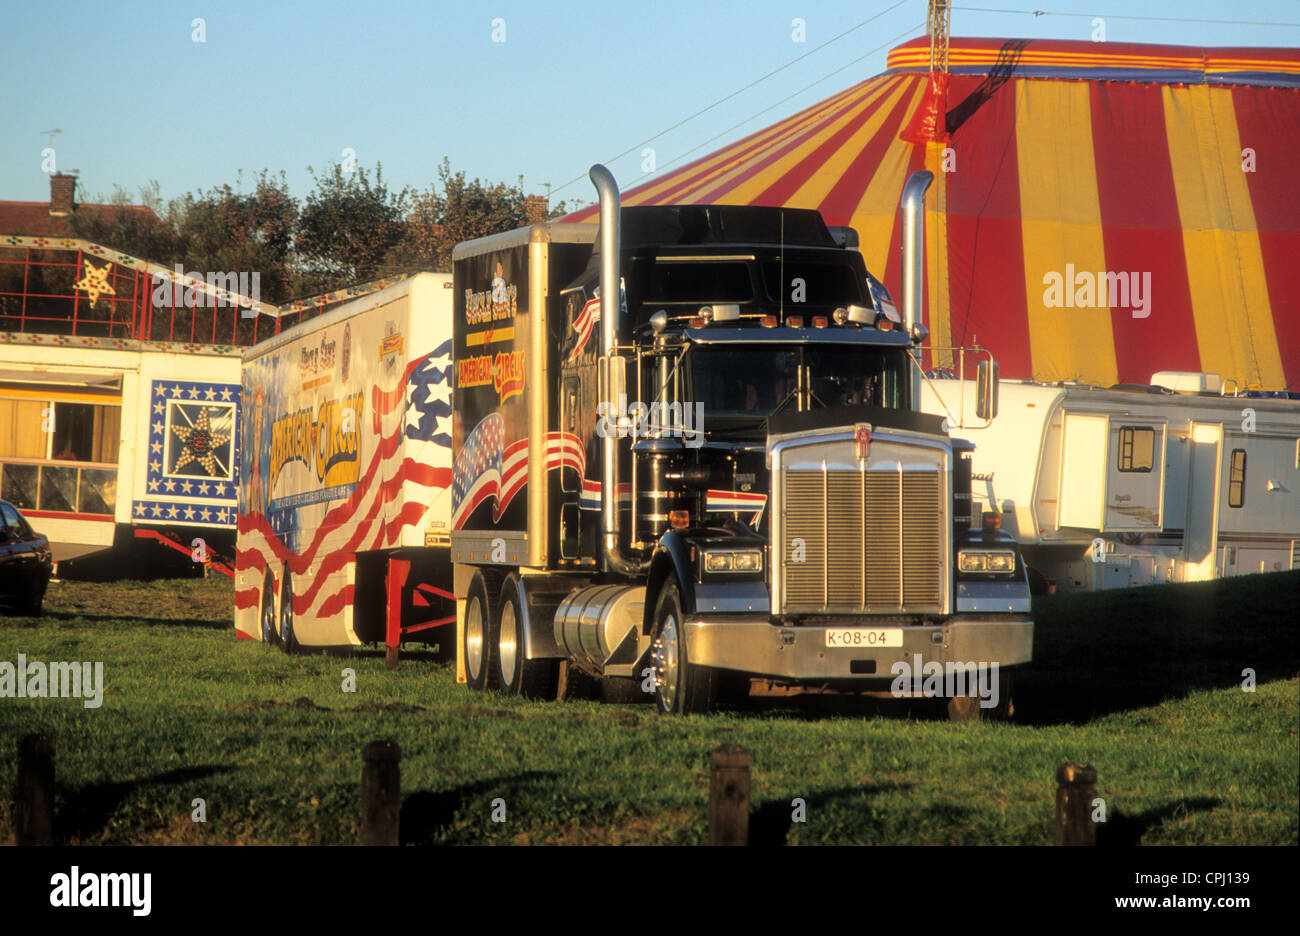 Eine stationäre Kenworth artikuliert LKW LKW am "Uncle Sams Great American Circus" im Norden Englands. Stockfoto